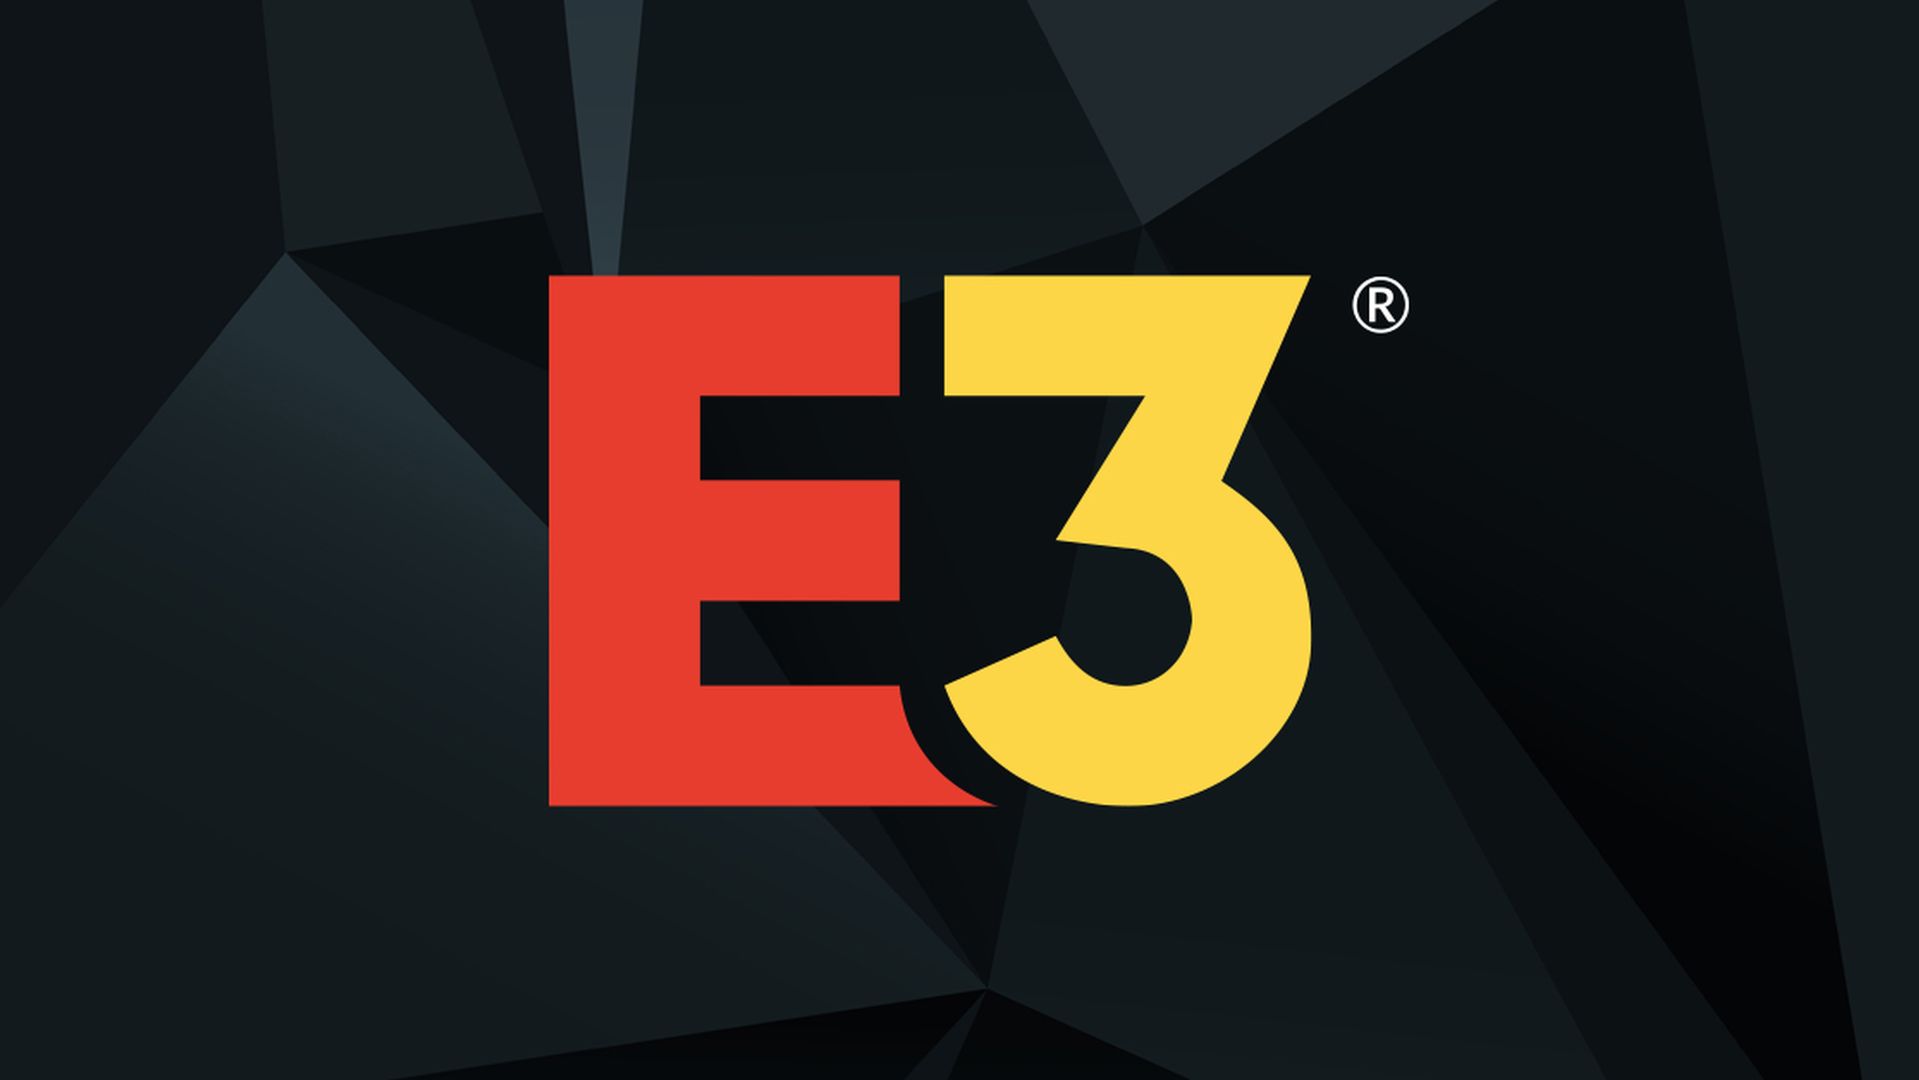 Bekræftet - E3 2021 afholdes online i juni